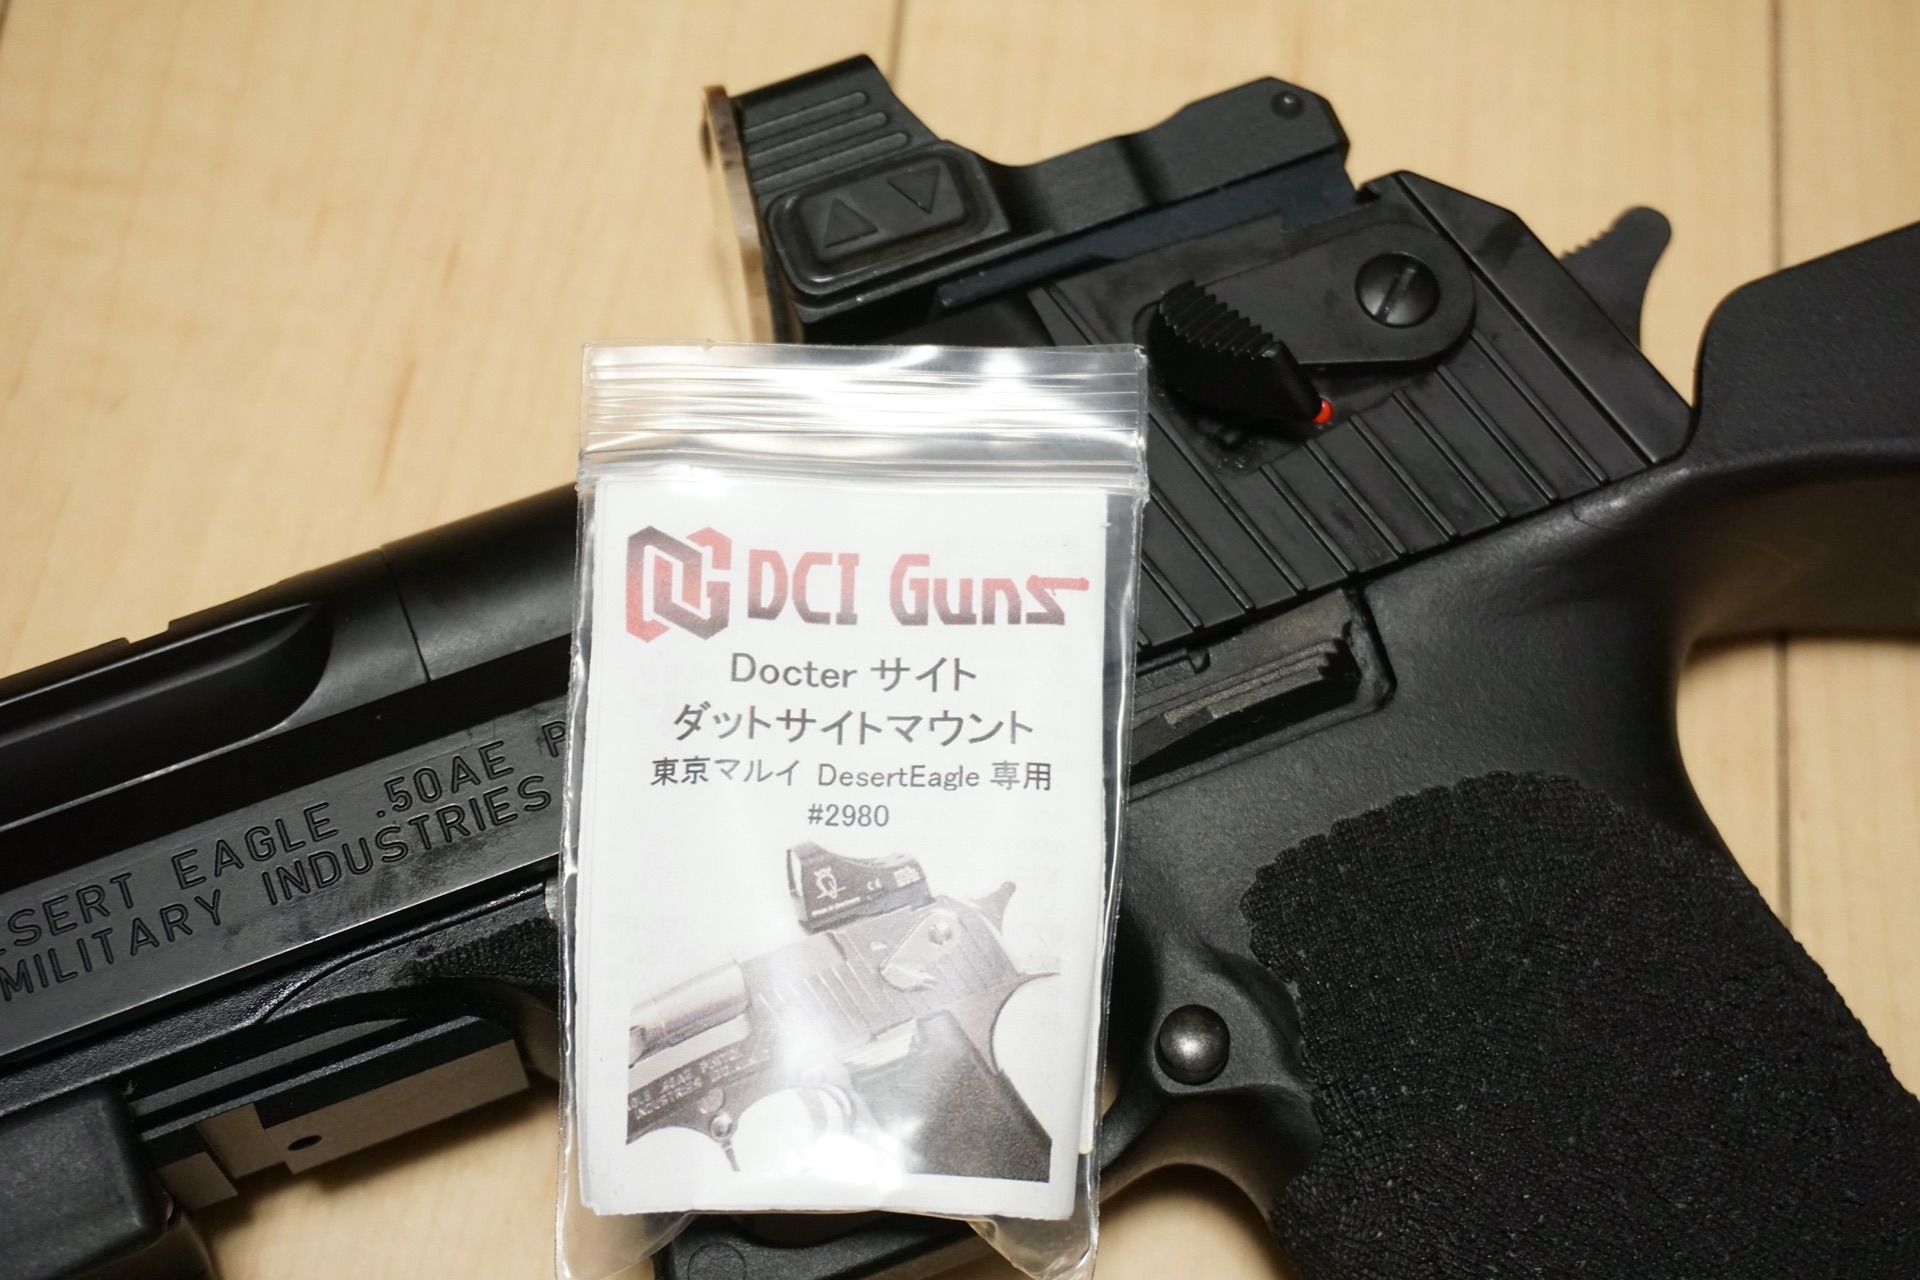 Dci Guns製 東京マルイ デザートイーグル専用 Doctor サイト ダットサイトマウントを買いました エボログ